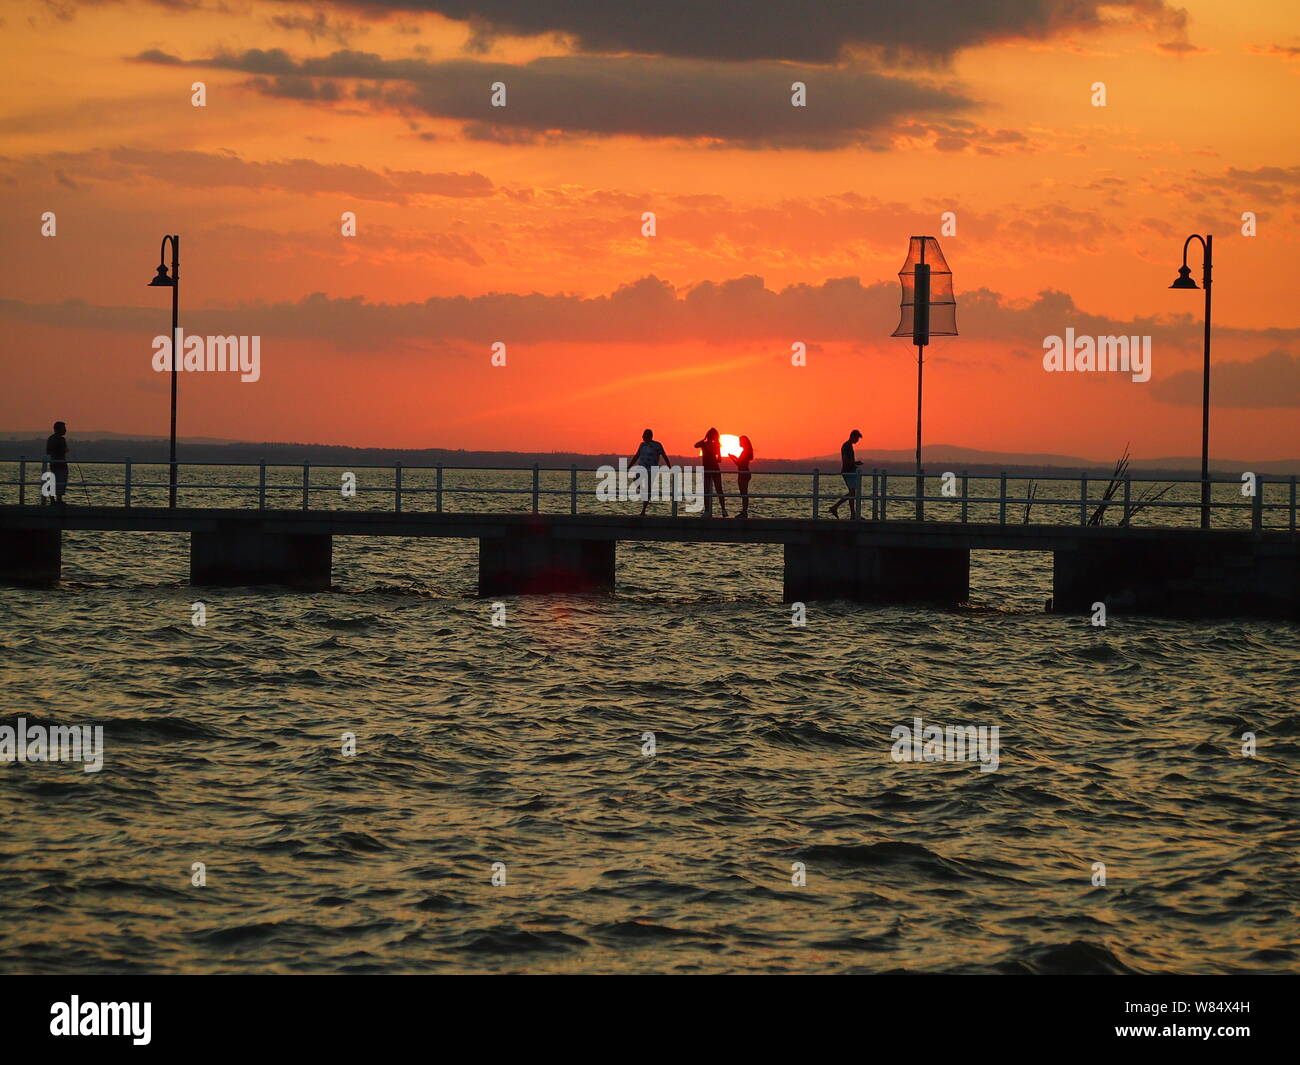 Personnes sur un quai silhouetted against orange ciel au coucher du soleil Banque D'Images